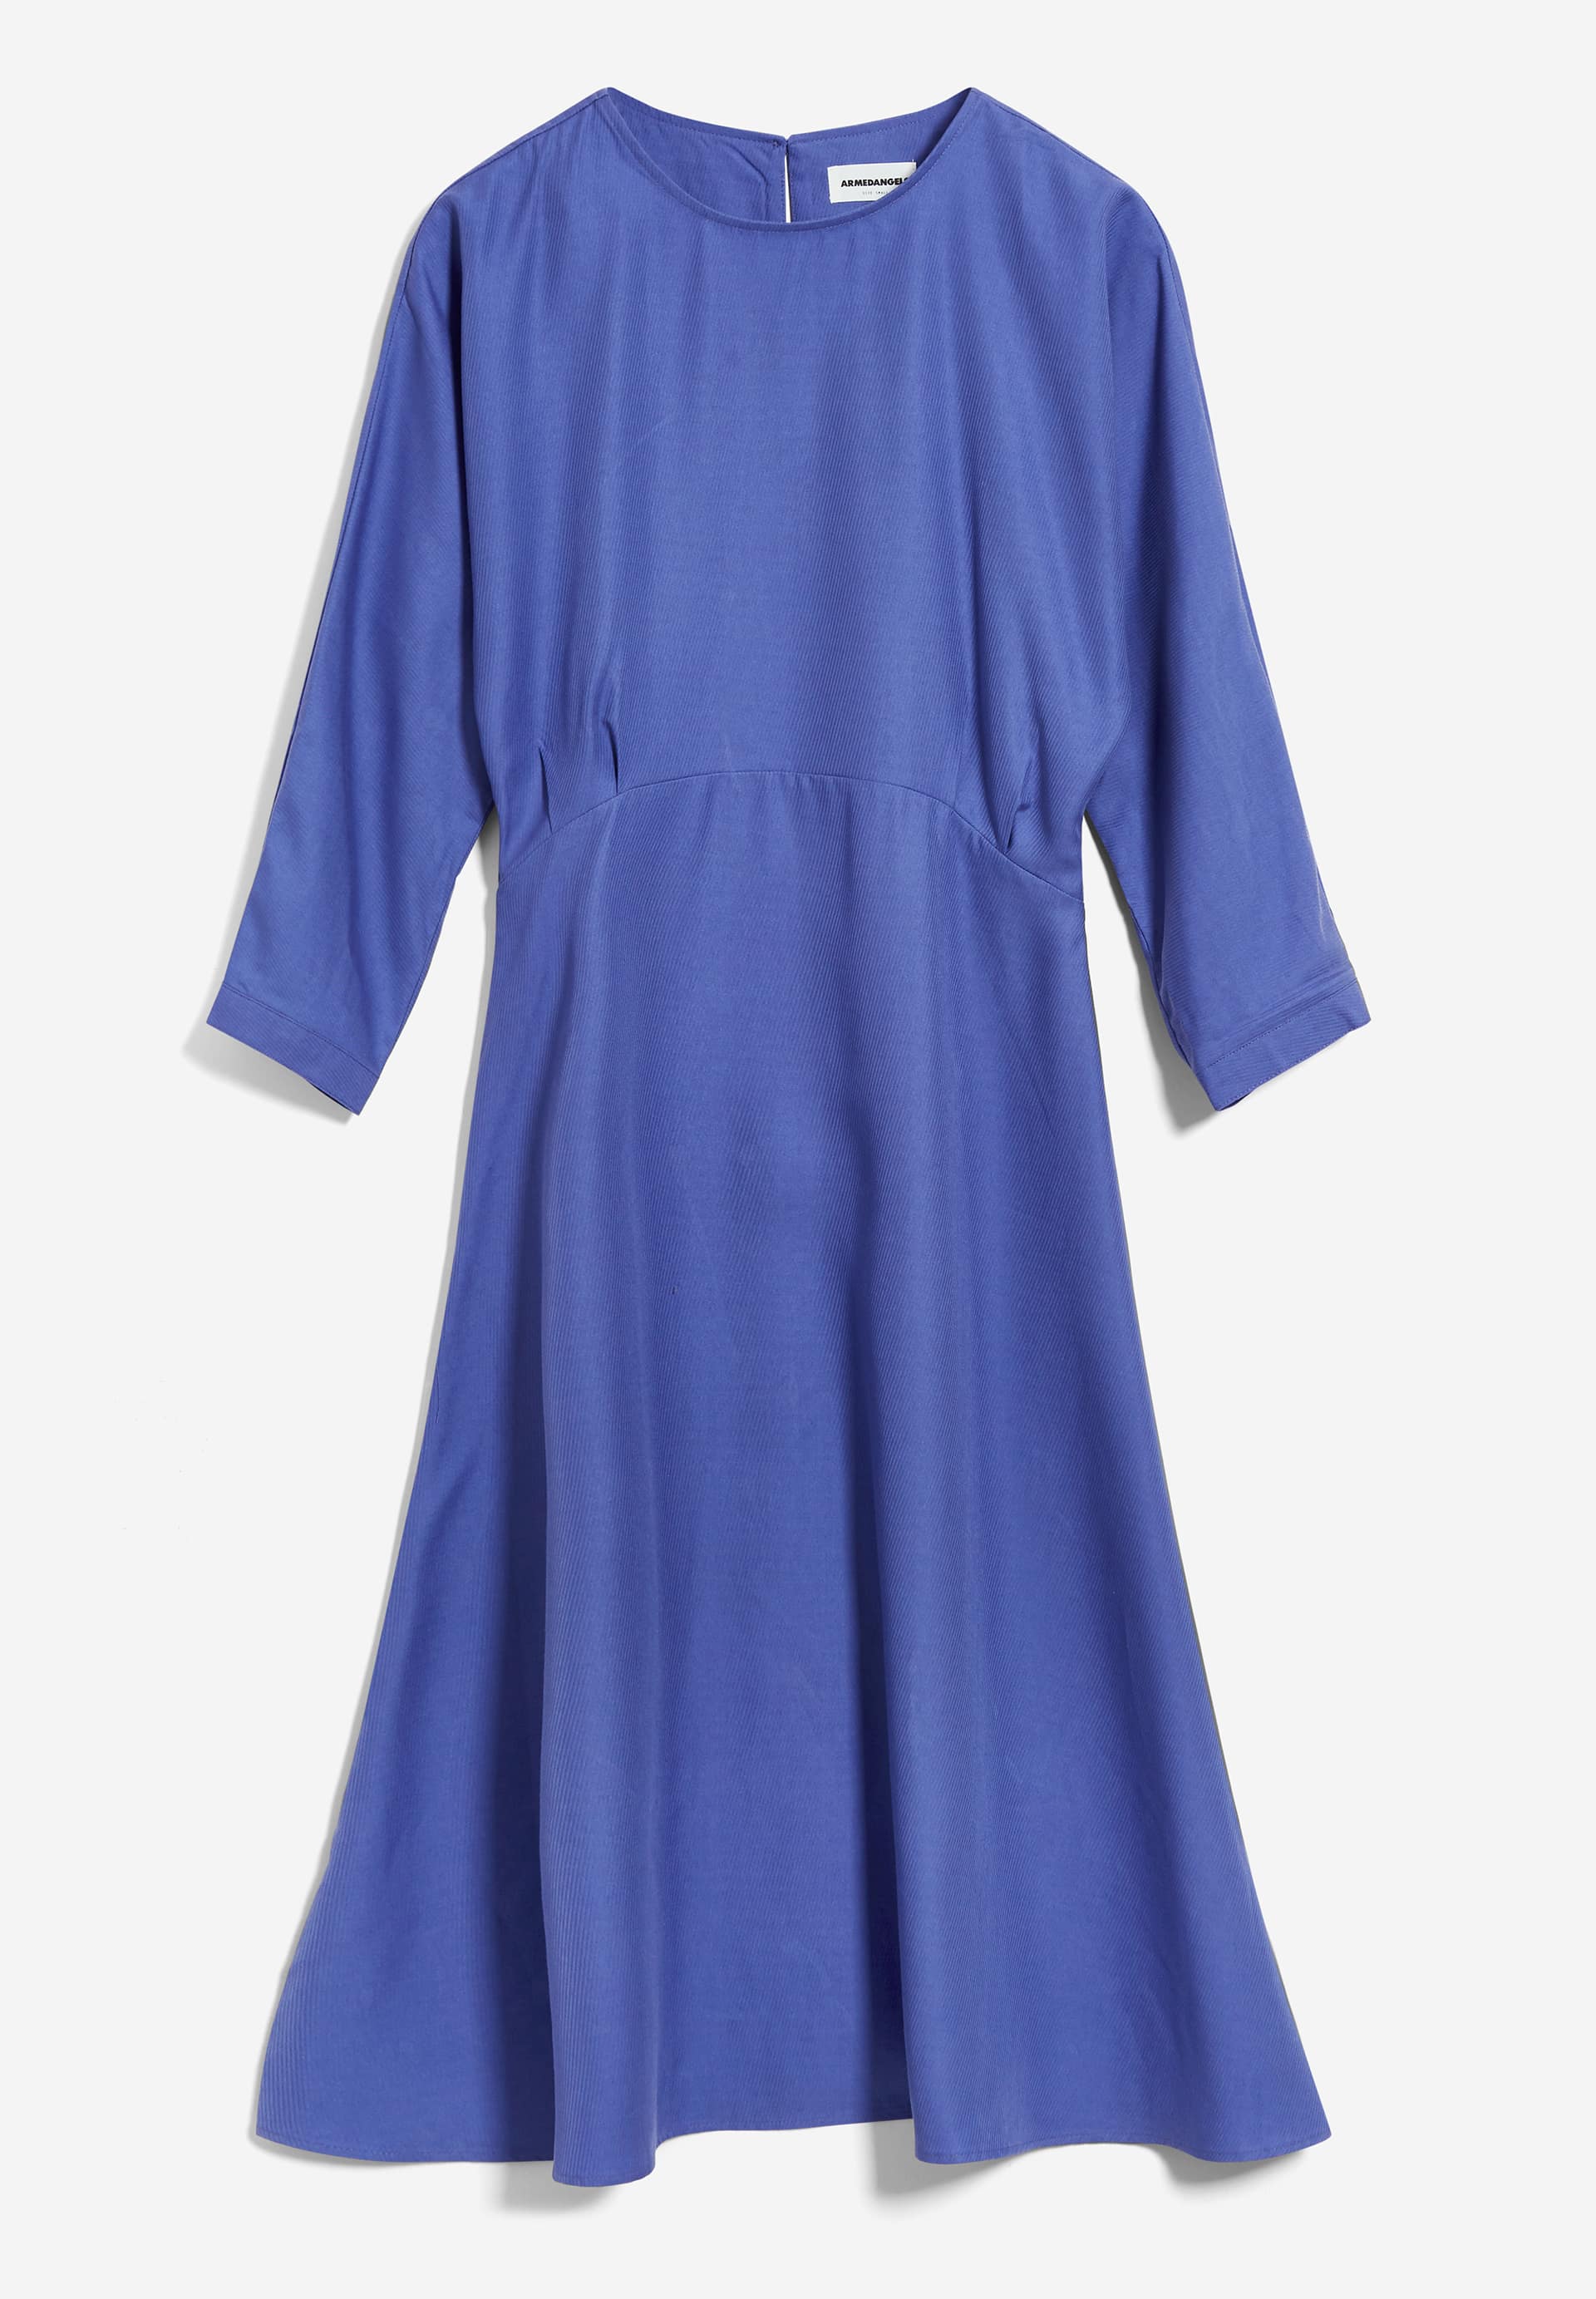 MAARLENA Woven Dress Regular Fit made of TENCEL™ Lyocell